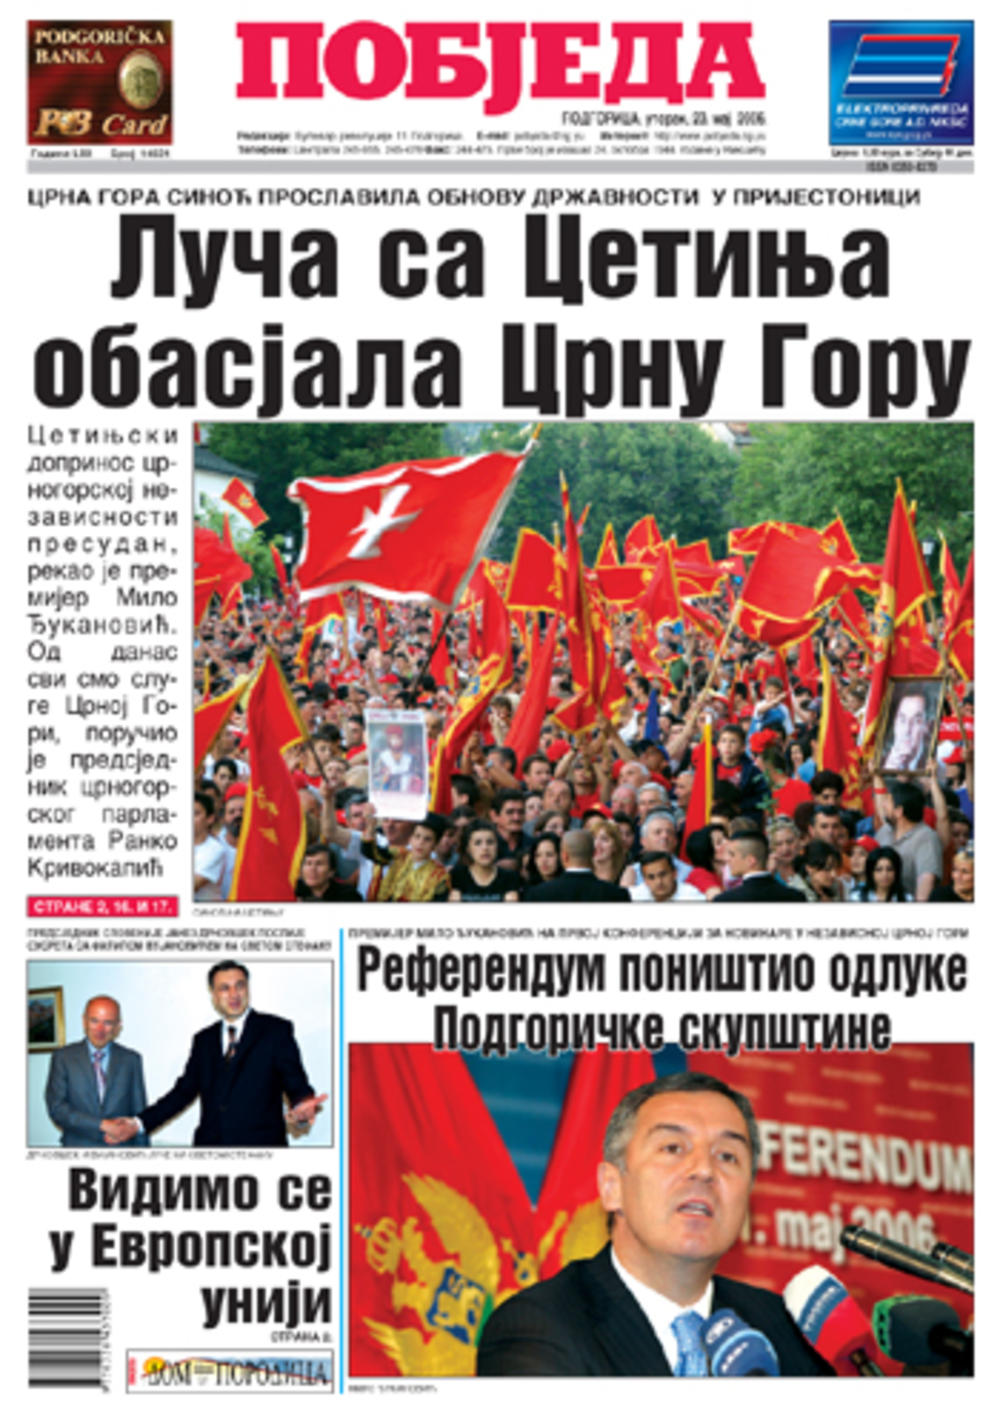 Naslovna strana Pobjede dan nakon referenduma